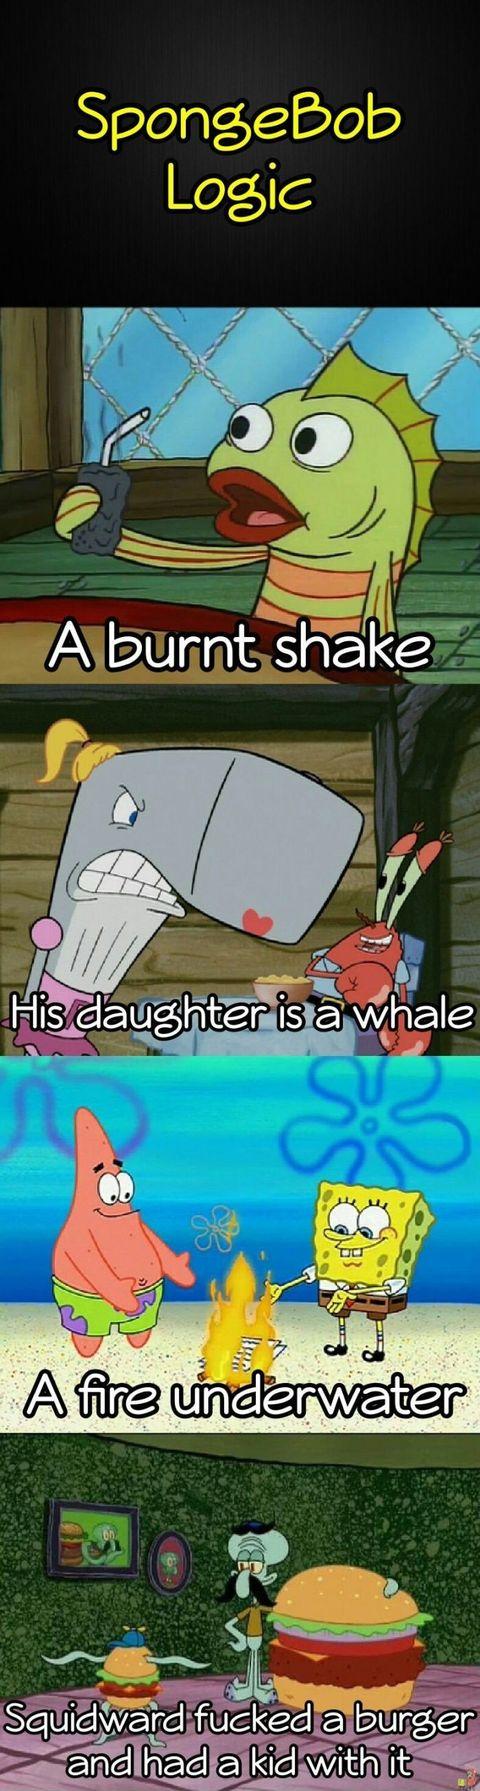 SpongeBob logic